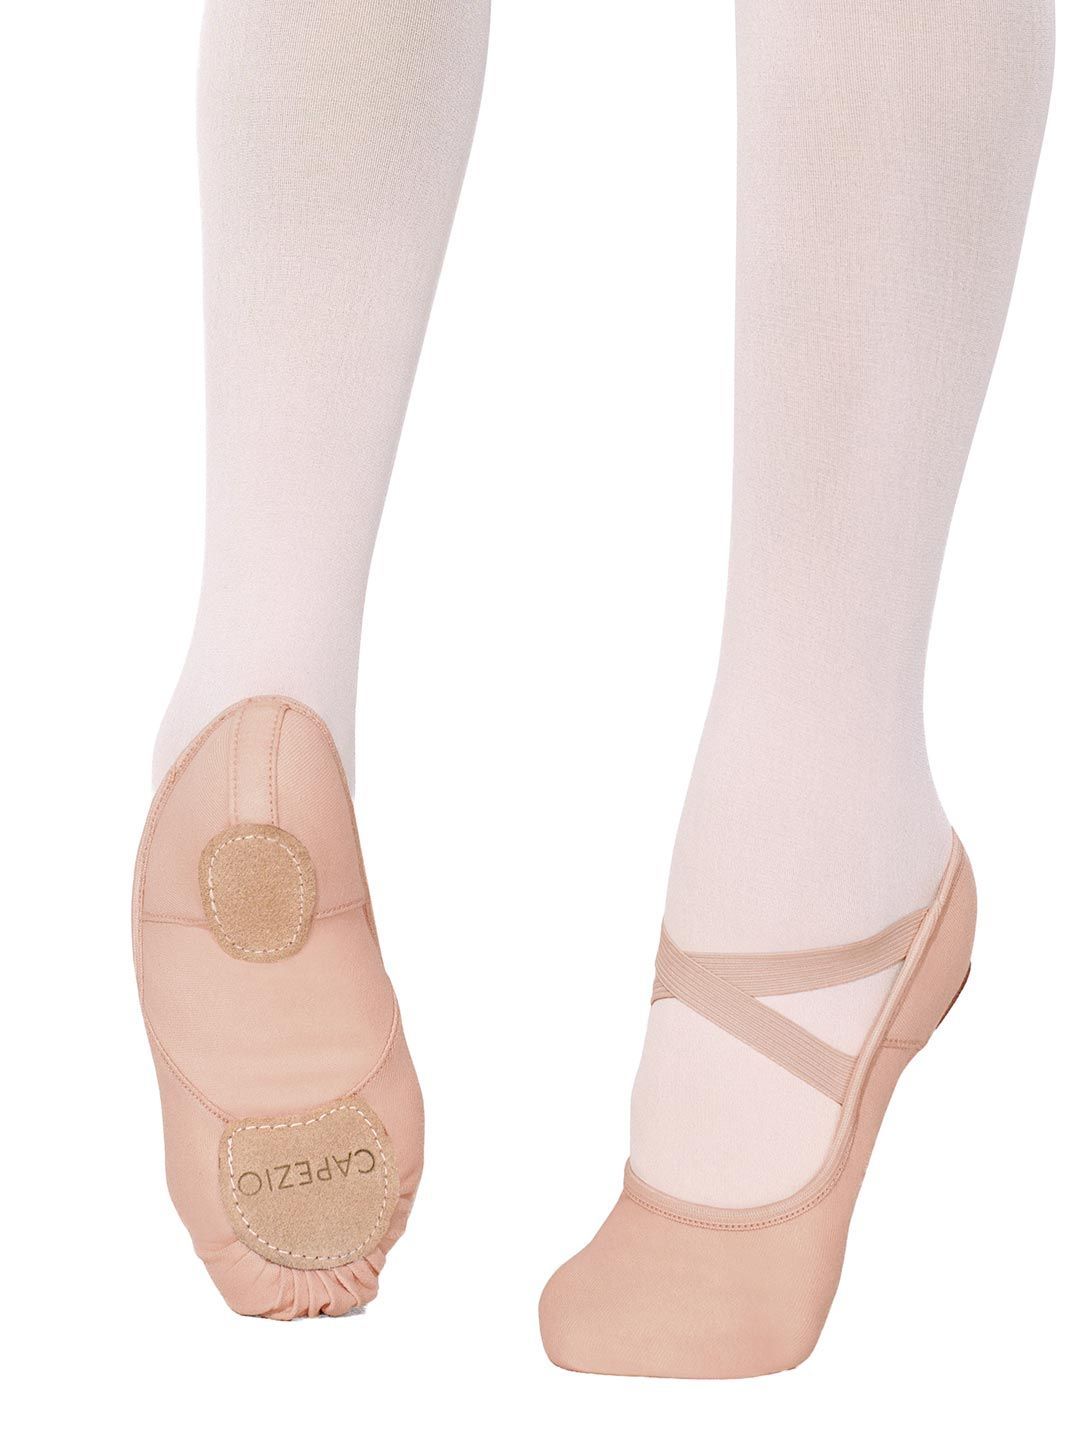 Capezio — Hanami Canvas — Ballet Shoes — Hummelstown, PA — The Dancer's Pointe